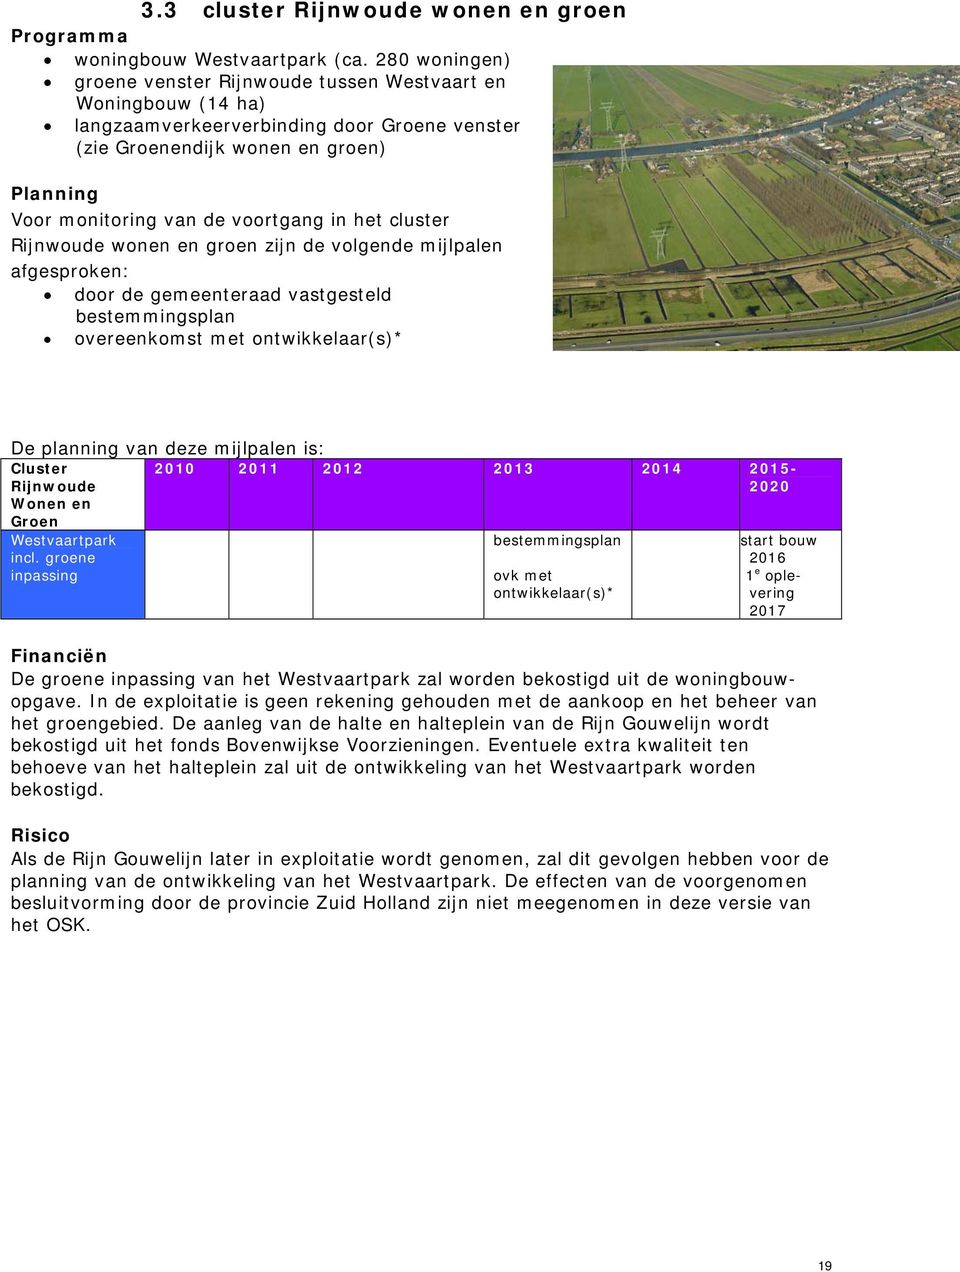 in het cluster Rijnwoude wonen en groen zijn de volgende mijlpalen afgesproken: door de gemeenteraad vastgesteld bestemmingsplan overeenkomst met ontwikkelaar(s)* De planning van deze mijlpalen is: